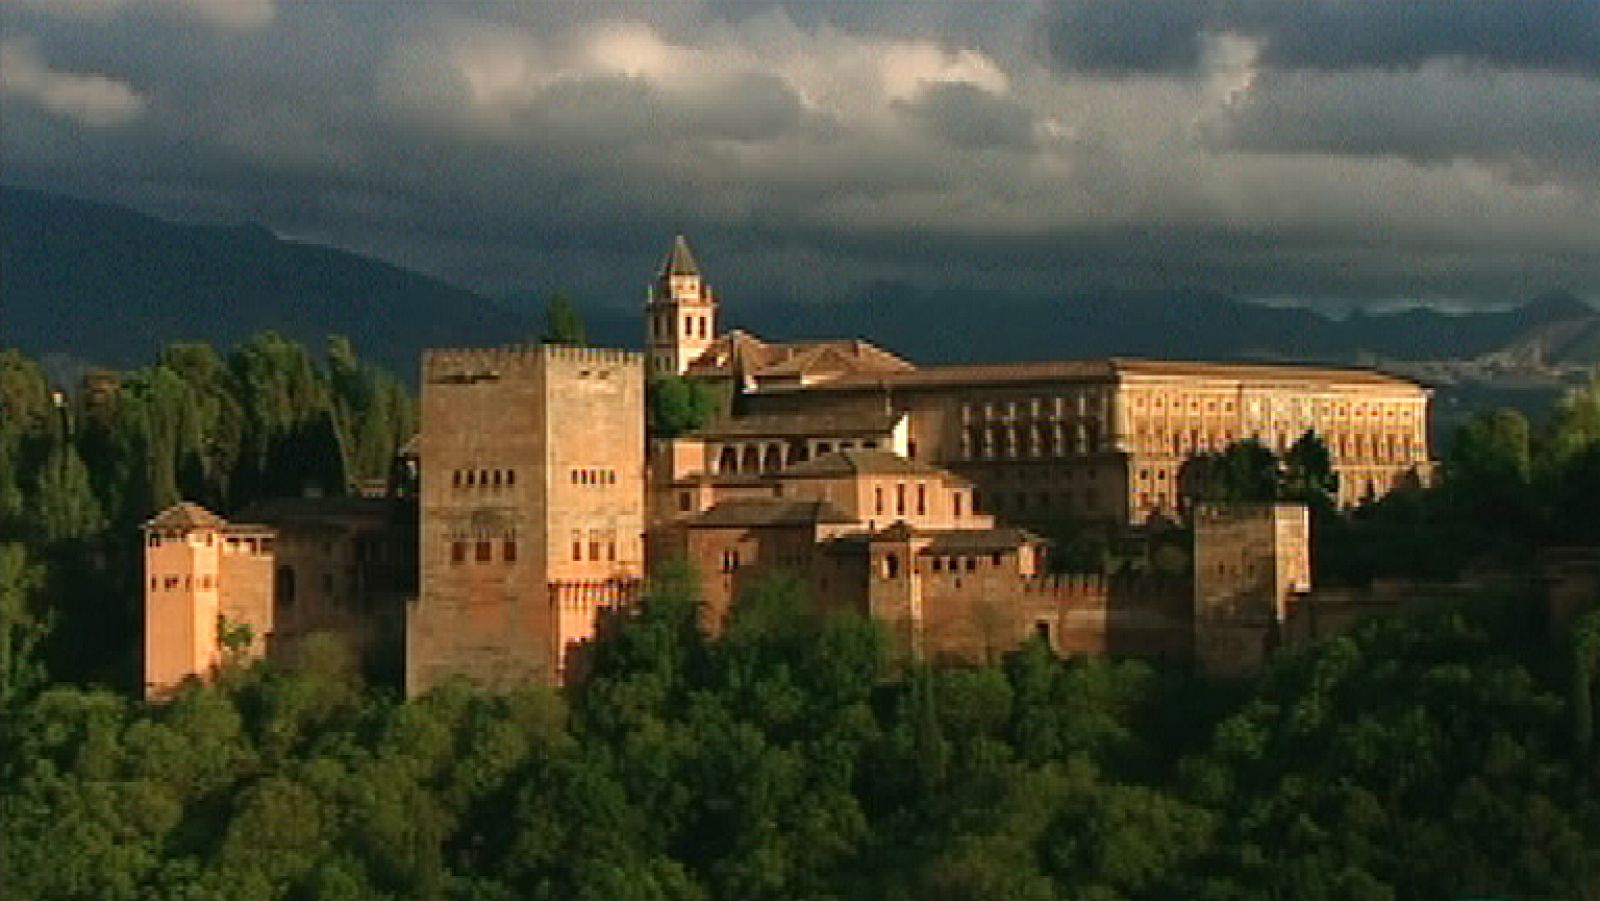 La mitad invisible - La Alhambra de Granada - Ver ahora